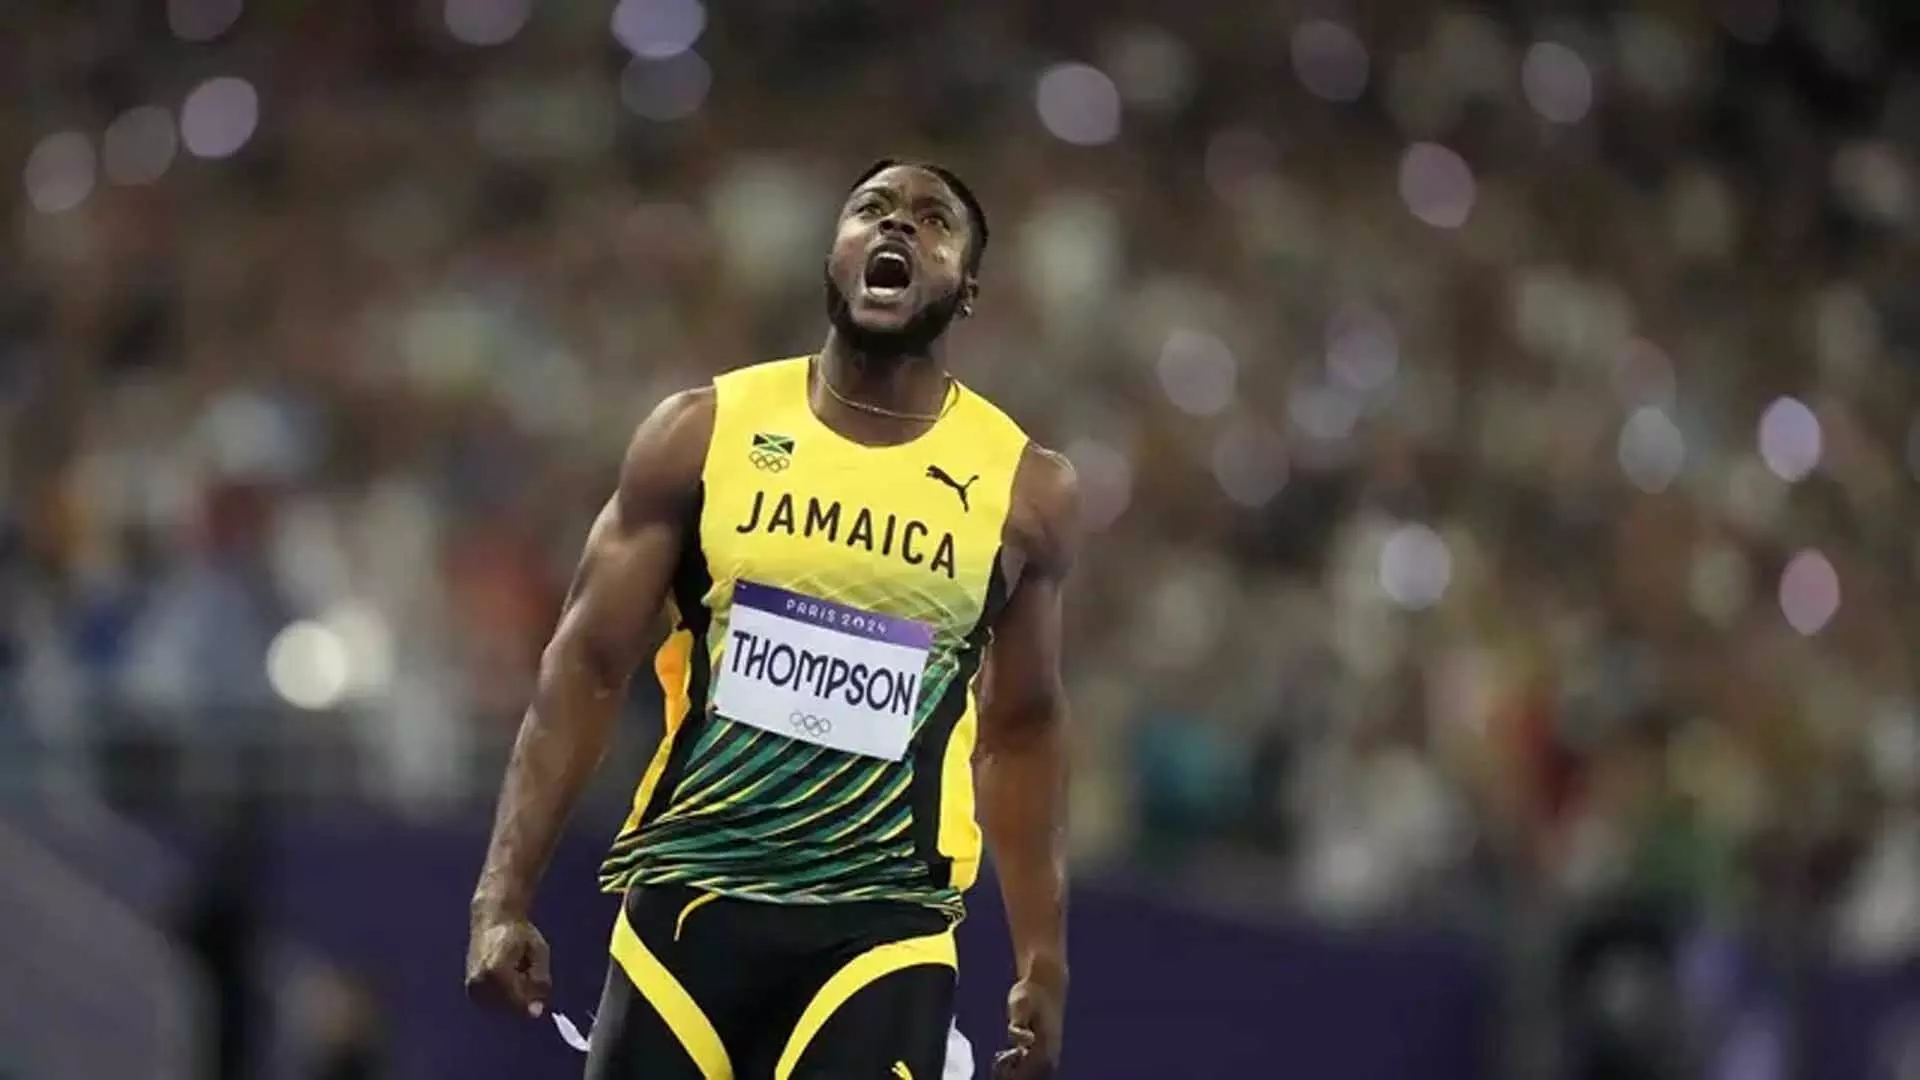 Olympics: किशन थॉम्पसन ने गलत छोर पर होने के बावजूद रजत पदक जीता